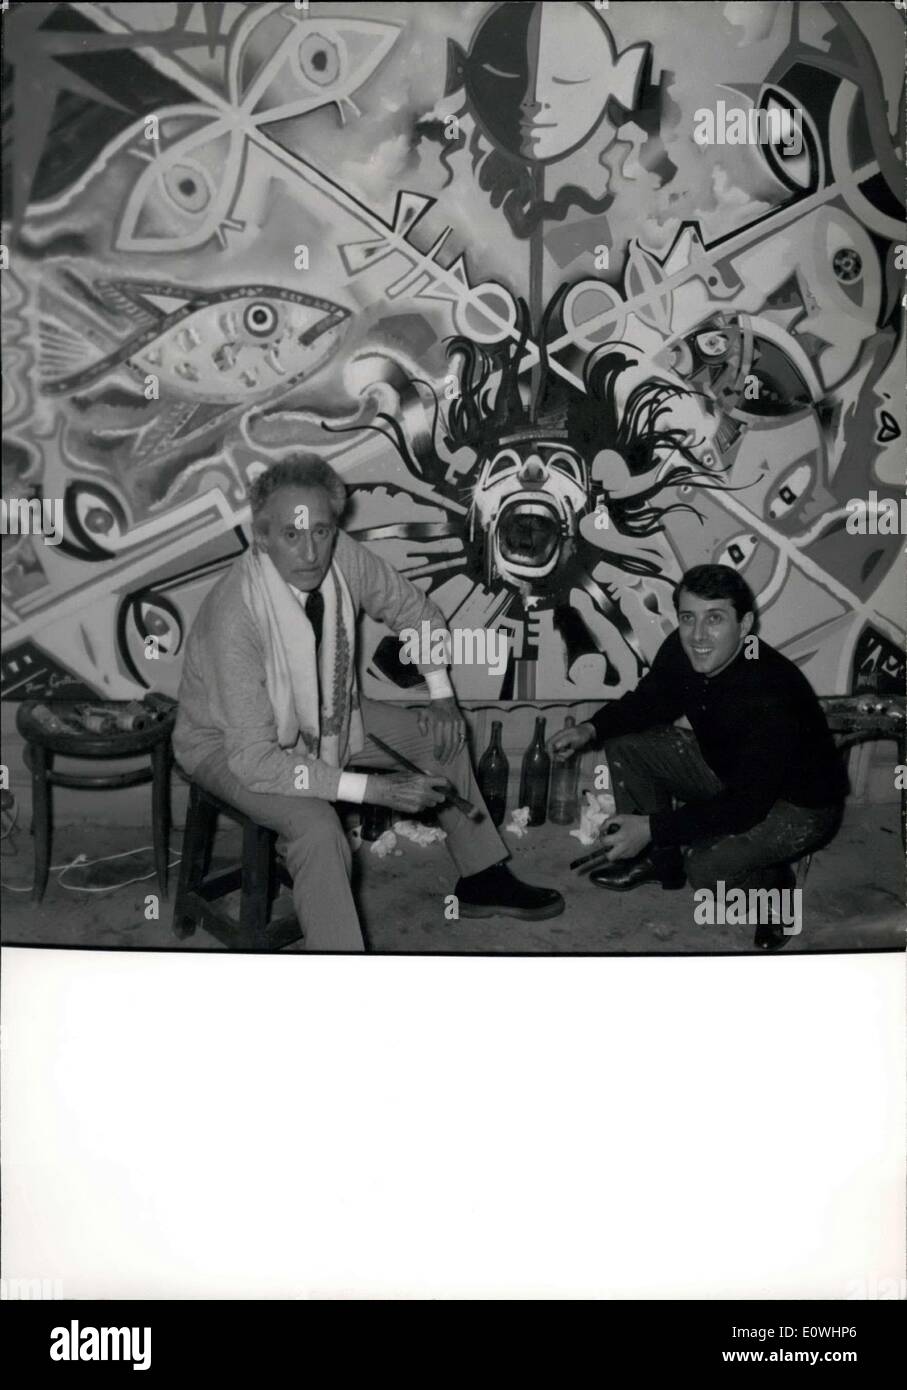 Enero 07, 1963 - Cocteau+Moretti - La Era de Acuario por primera vez dos conocidos pintores han pintado juntos una pintura. Empezado final de este verano ha sido terminado ow. Jean Cocteau y R. Moretti son los artistas. Cocteau ha pintado la mitad izquierda mientras la derecha Moretti, OPS:- Jean Cocteau y R. Moretti antes de su pintura de acabado llamado ''Era de Acuario' Foto de stock